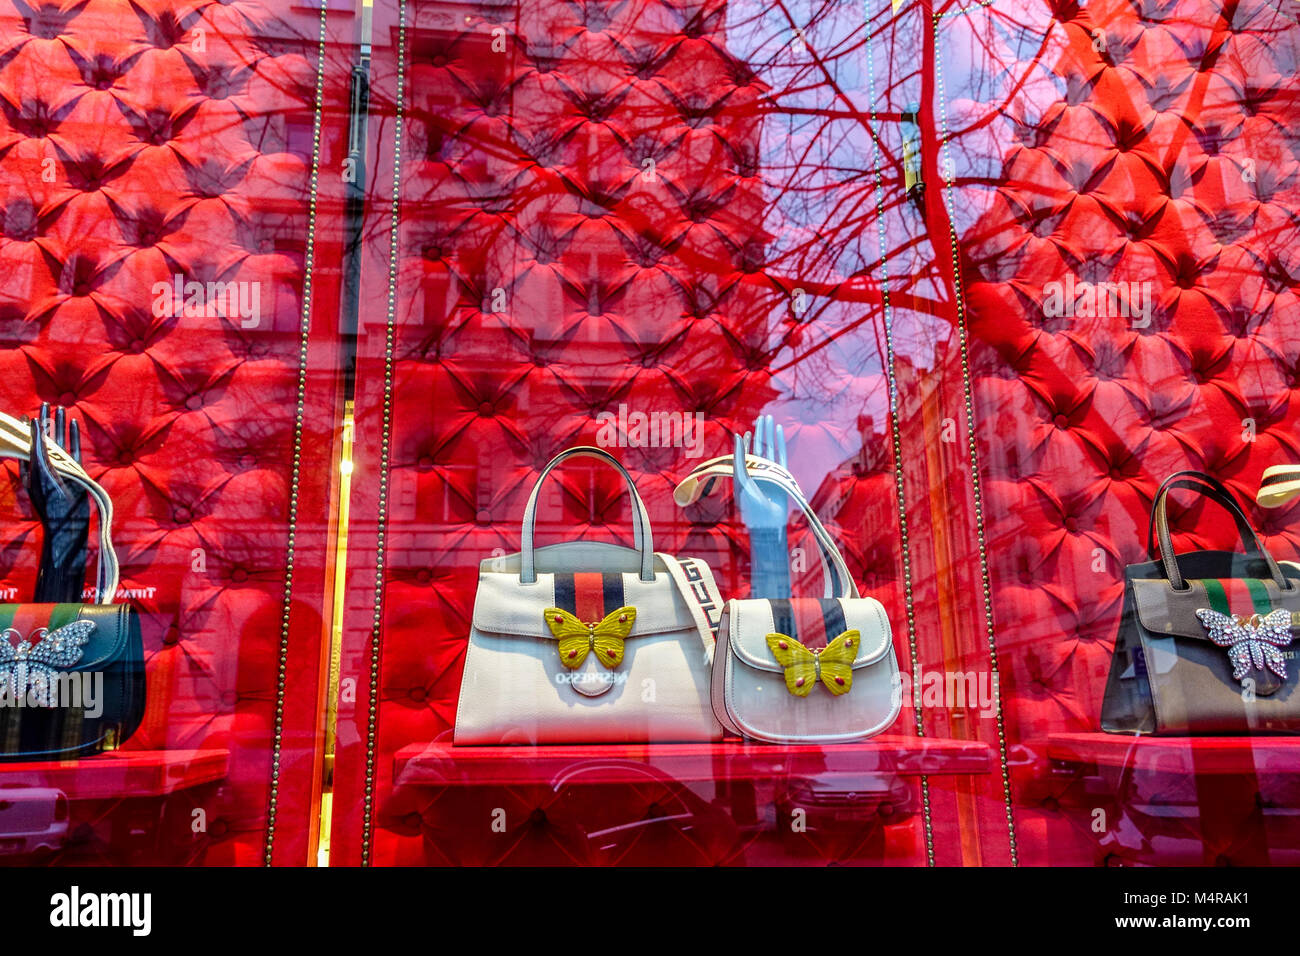 Gucci Handtaschen in einem Modegeschäft, Parizska Straße, Prag Shopping,  Tschechische Republik Stockfotografie - Alamy